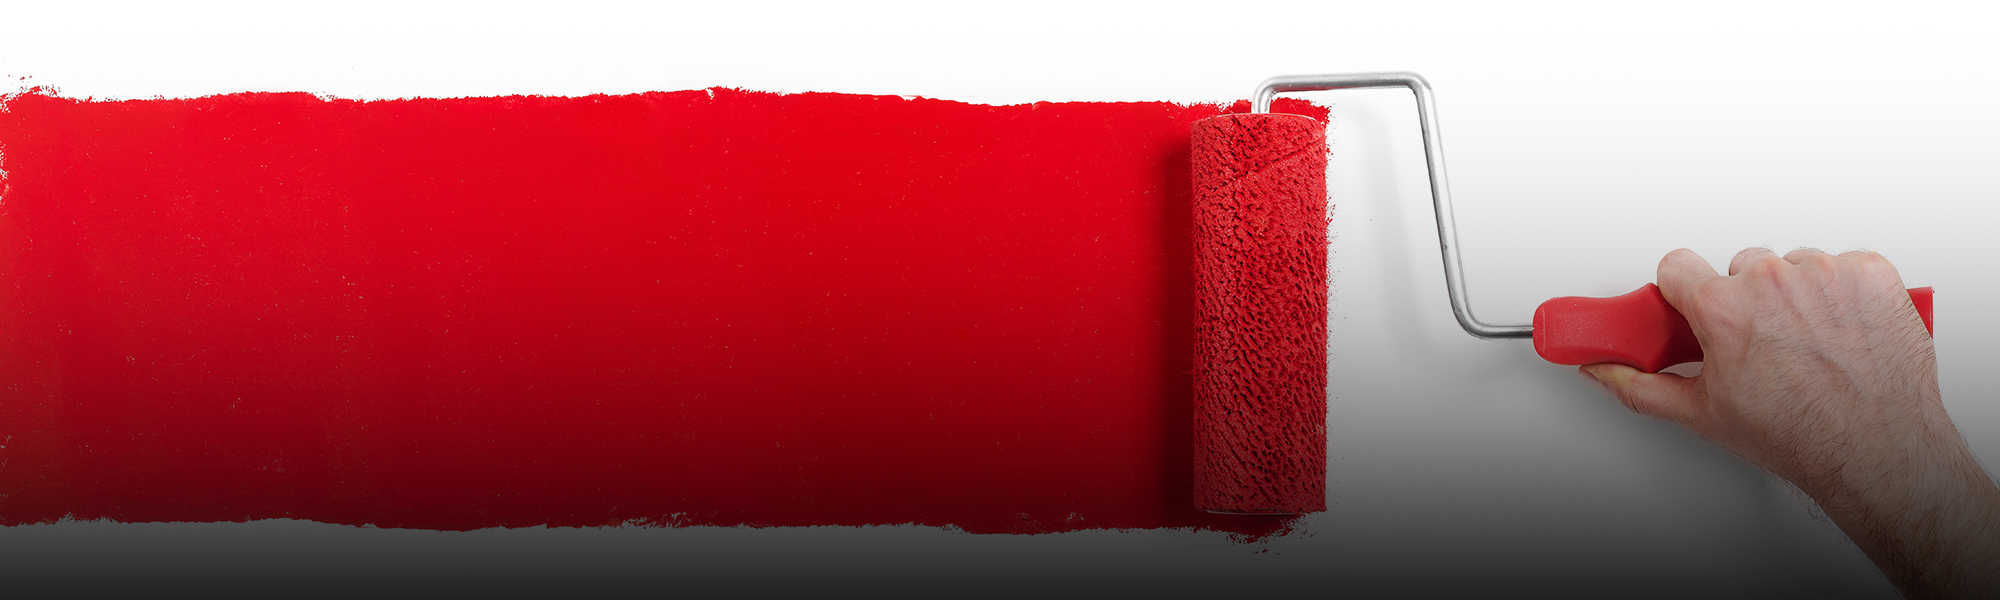 trazo de pintura roja por rodillo